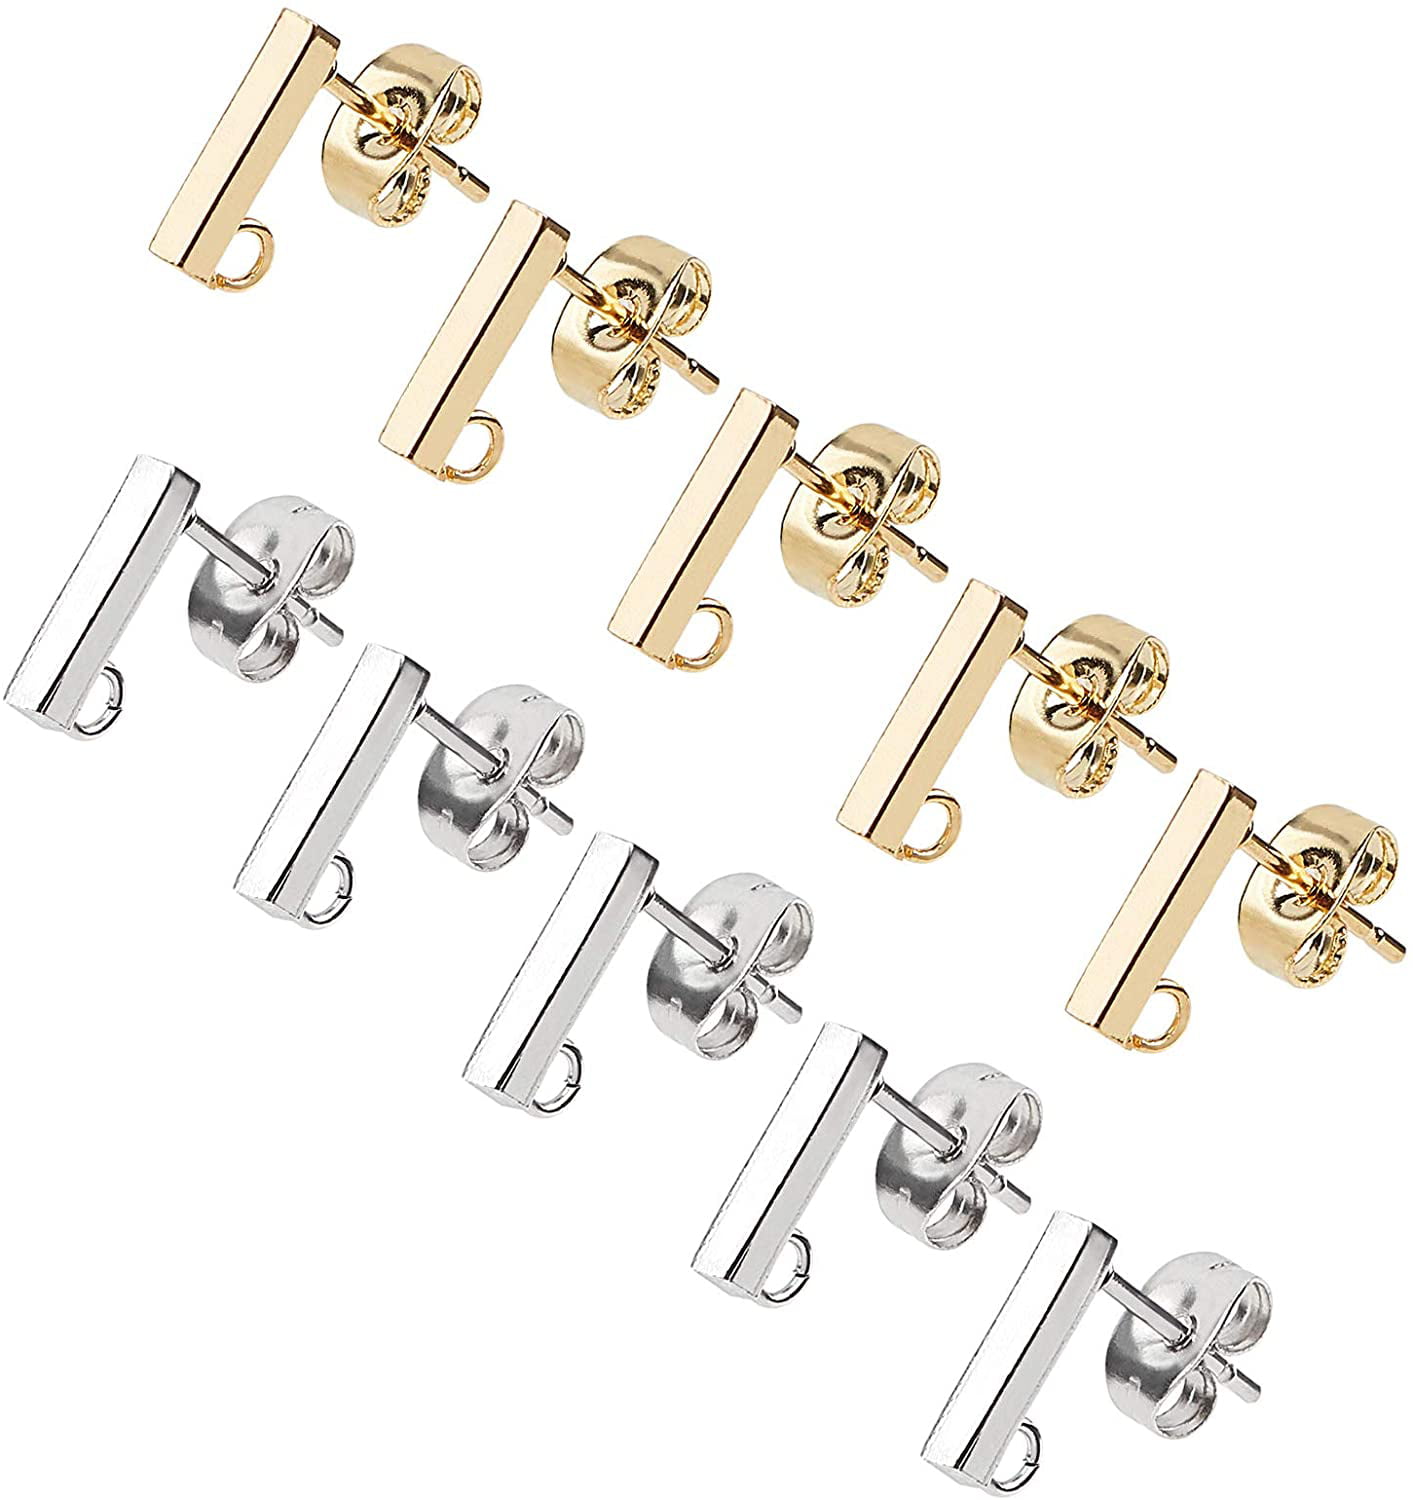 10pc DIY Stainless Steel Stud Earring Findings with Loop Earring Jewelry Making 